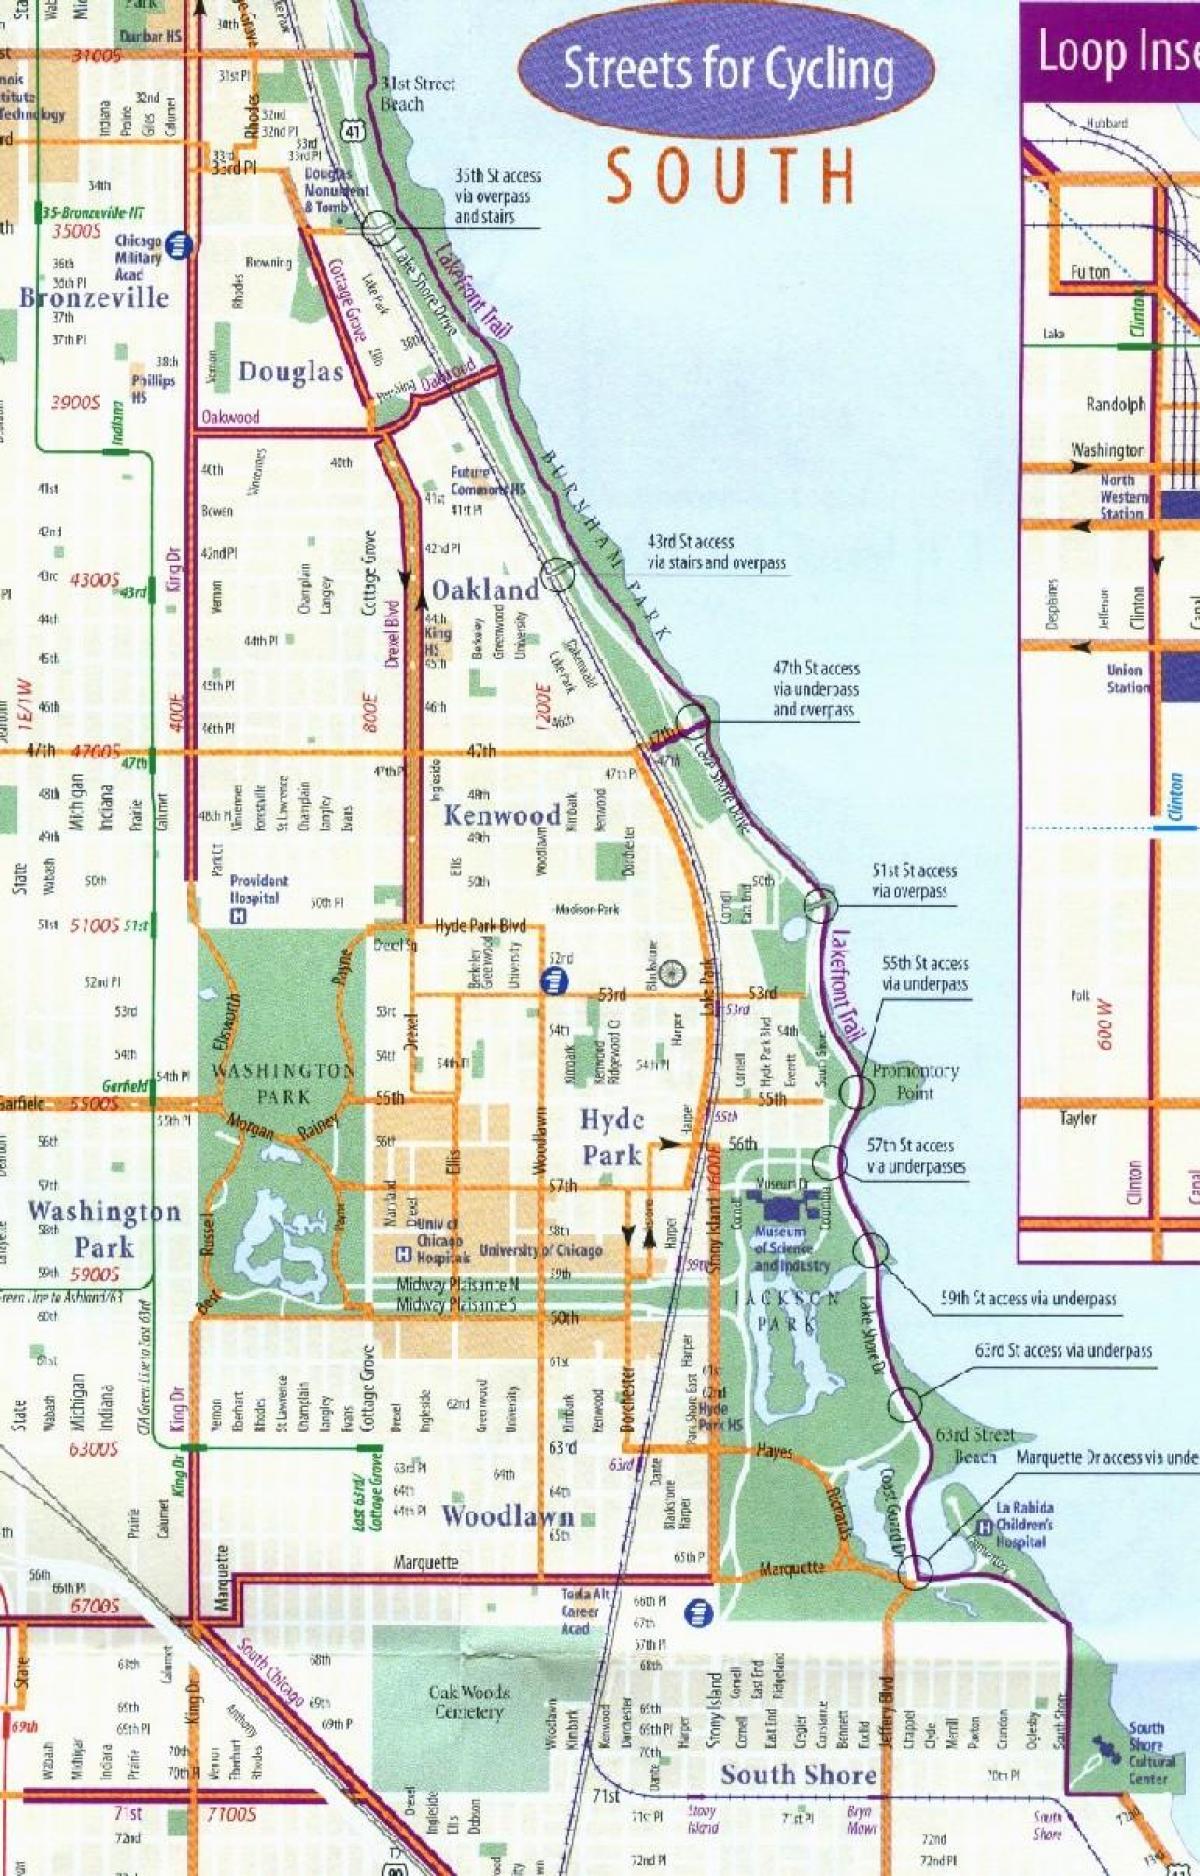 Chicago bike lane arată hartă